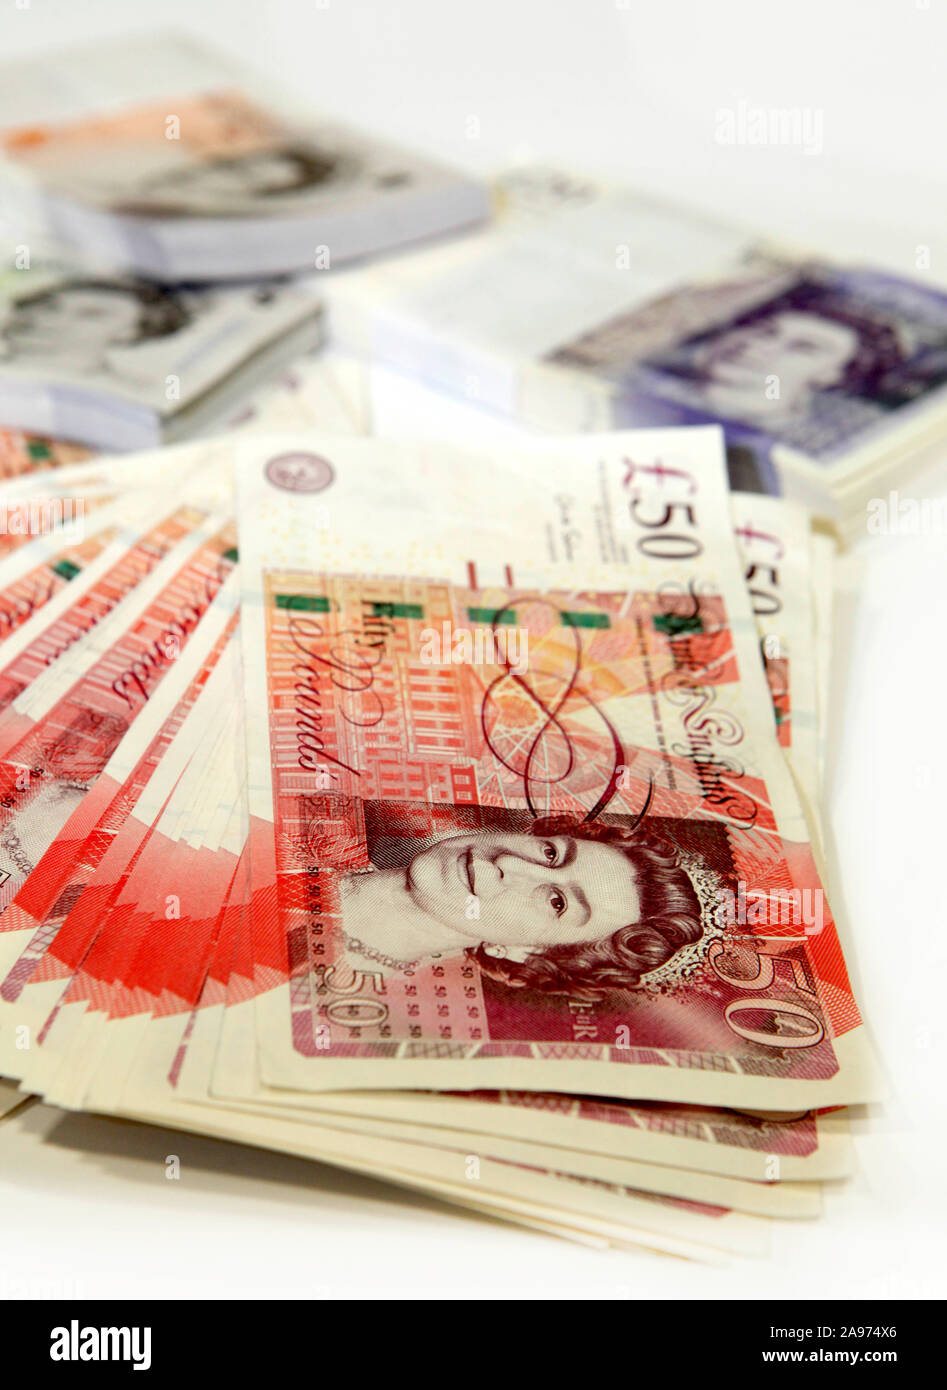 Ein großes Bündel britischer Geldscheine. Die Banknoten der Bank of England in der Stückelung 50 Pfund, 20 Pfund, 5 Pfund tragen alle das Antlitz der Stock Photo